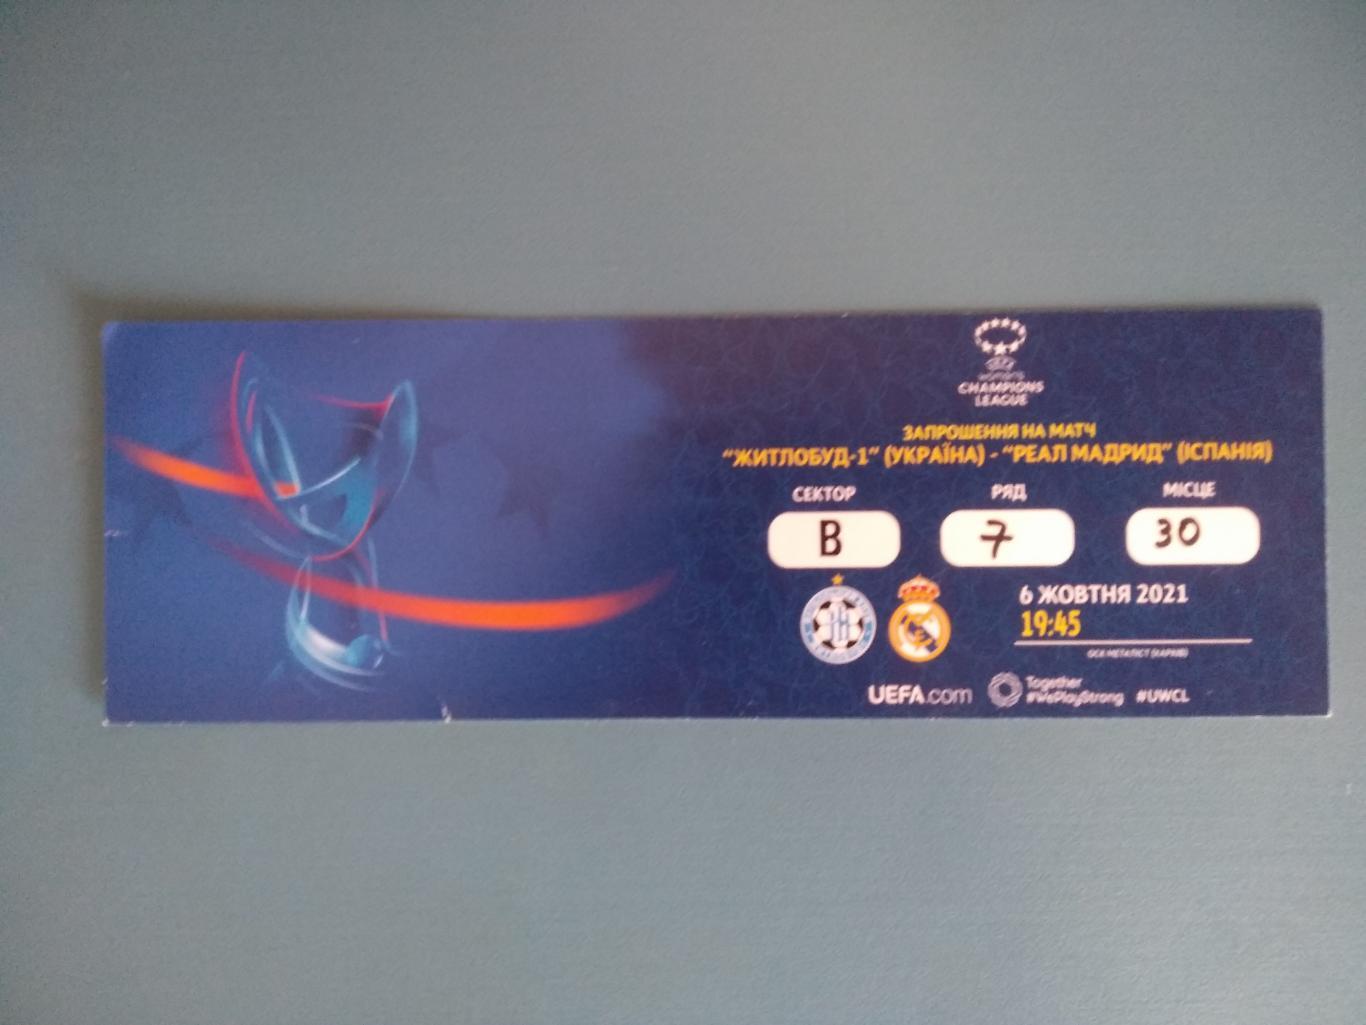 Жилстрой - 1 Харьков Украина - Реал Мадрид Испания 2021